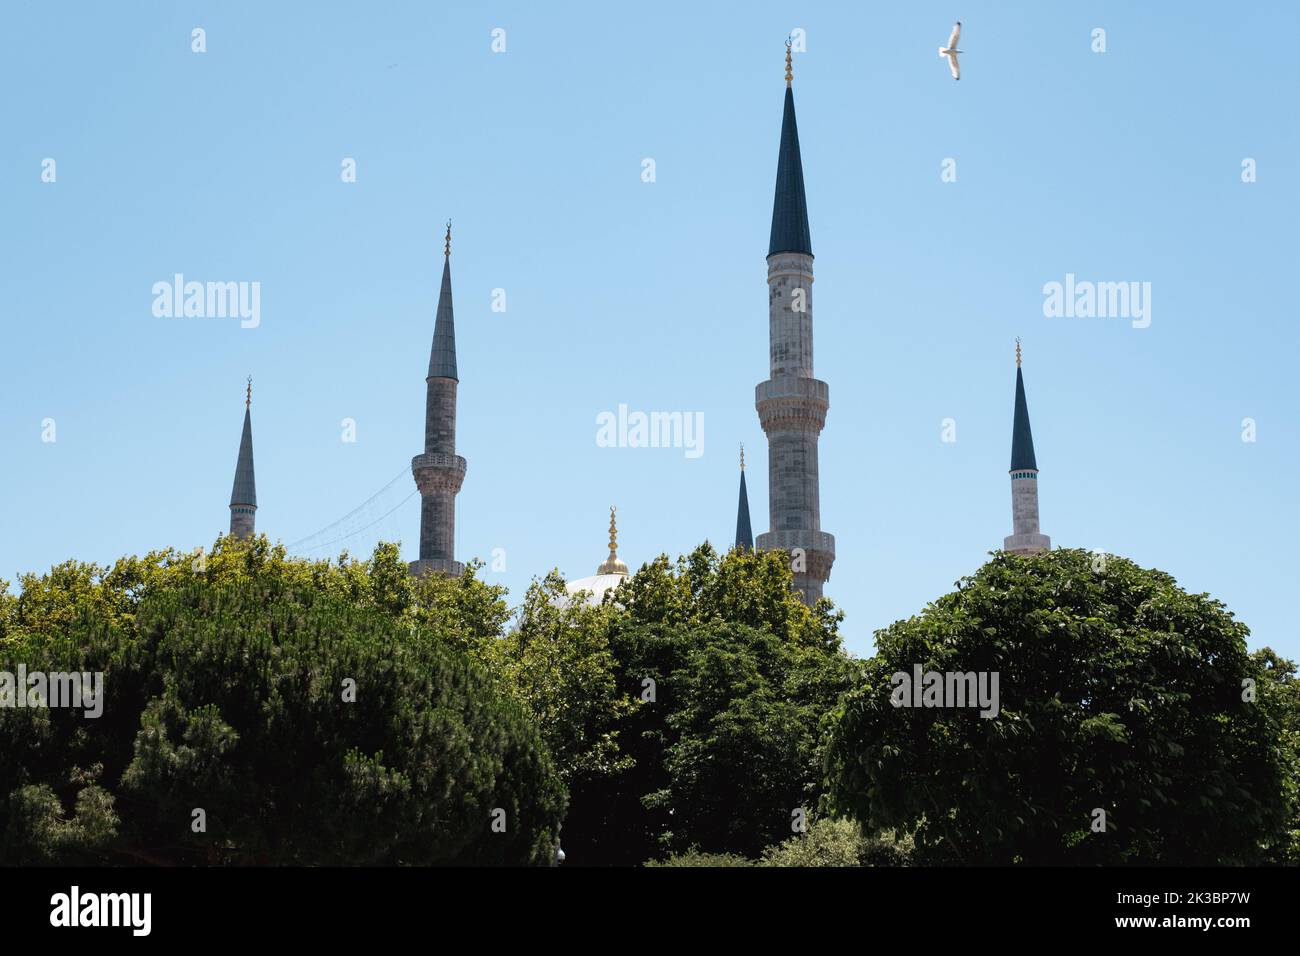 4 minarets de Mosquée bleue avec arbres, Islam et concept de religion, vieux bâtiment historique, espace de copie avec beau minaret de mosquée Banque D'Images